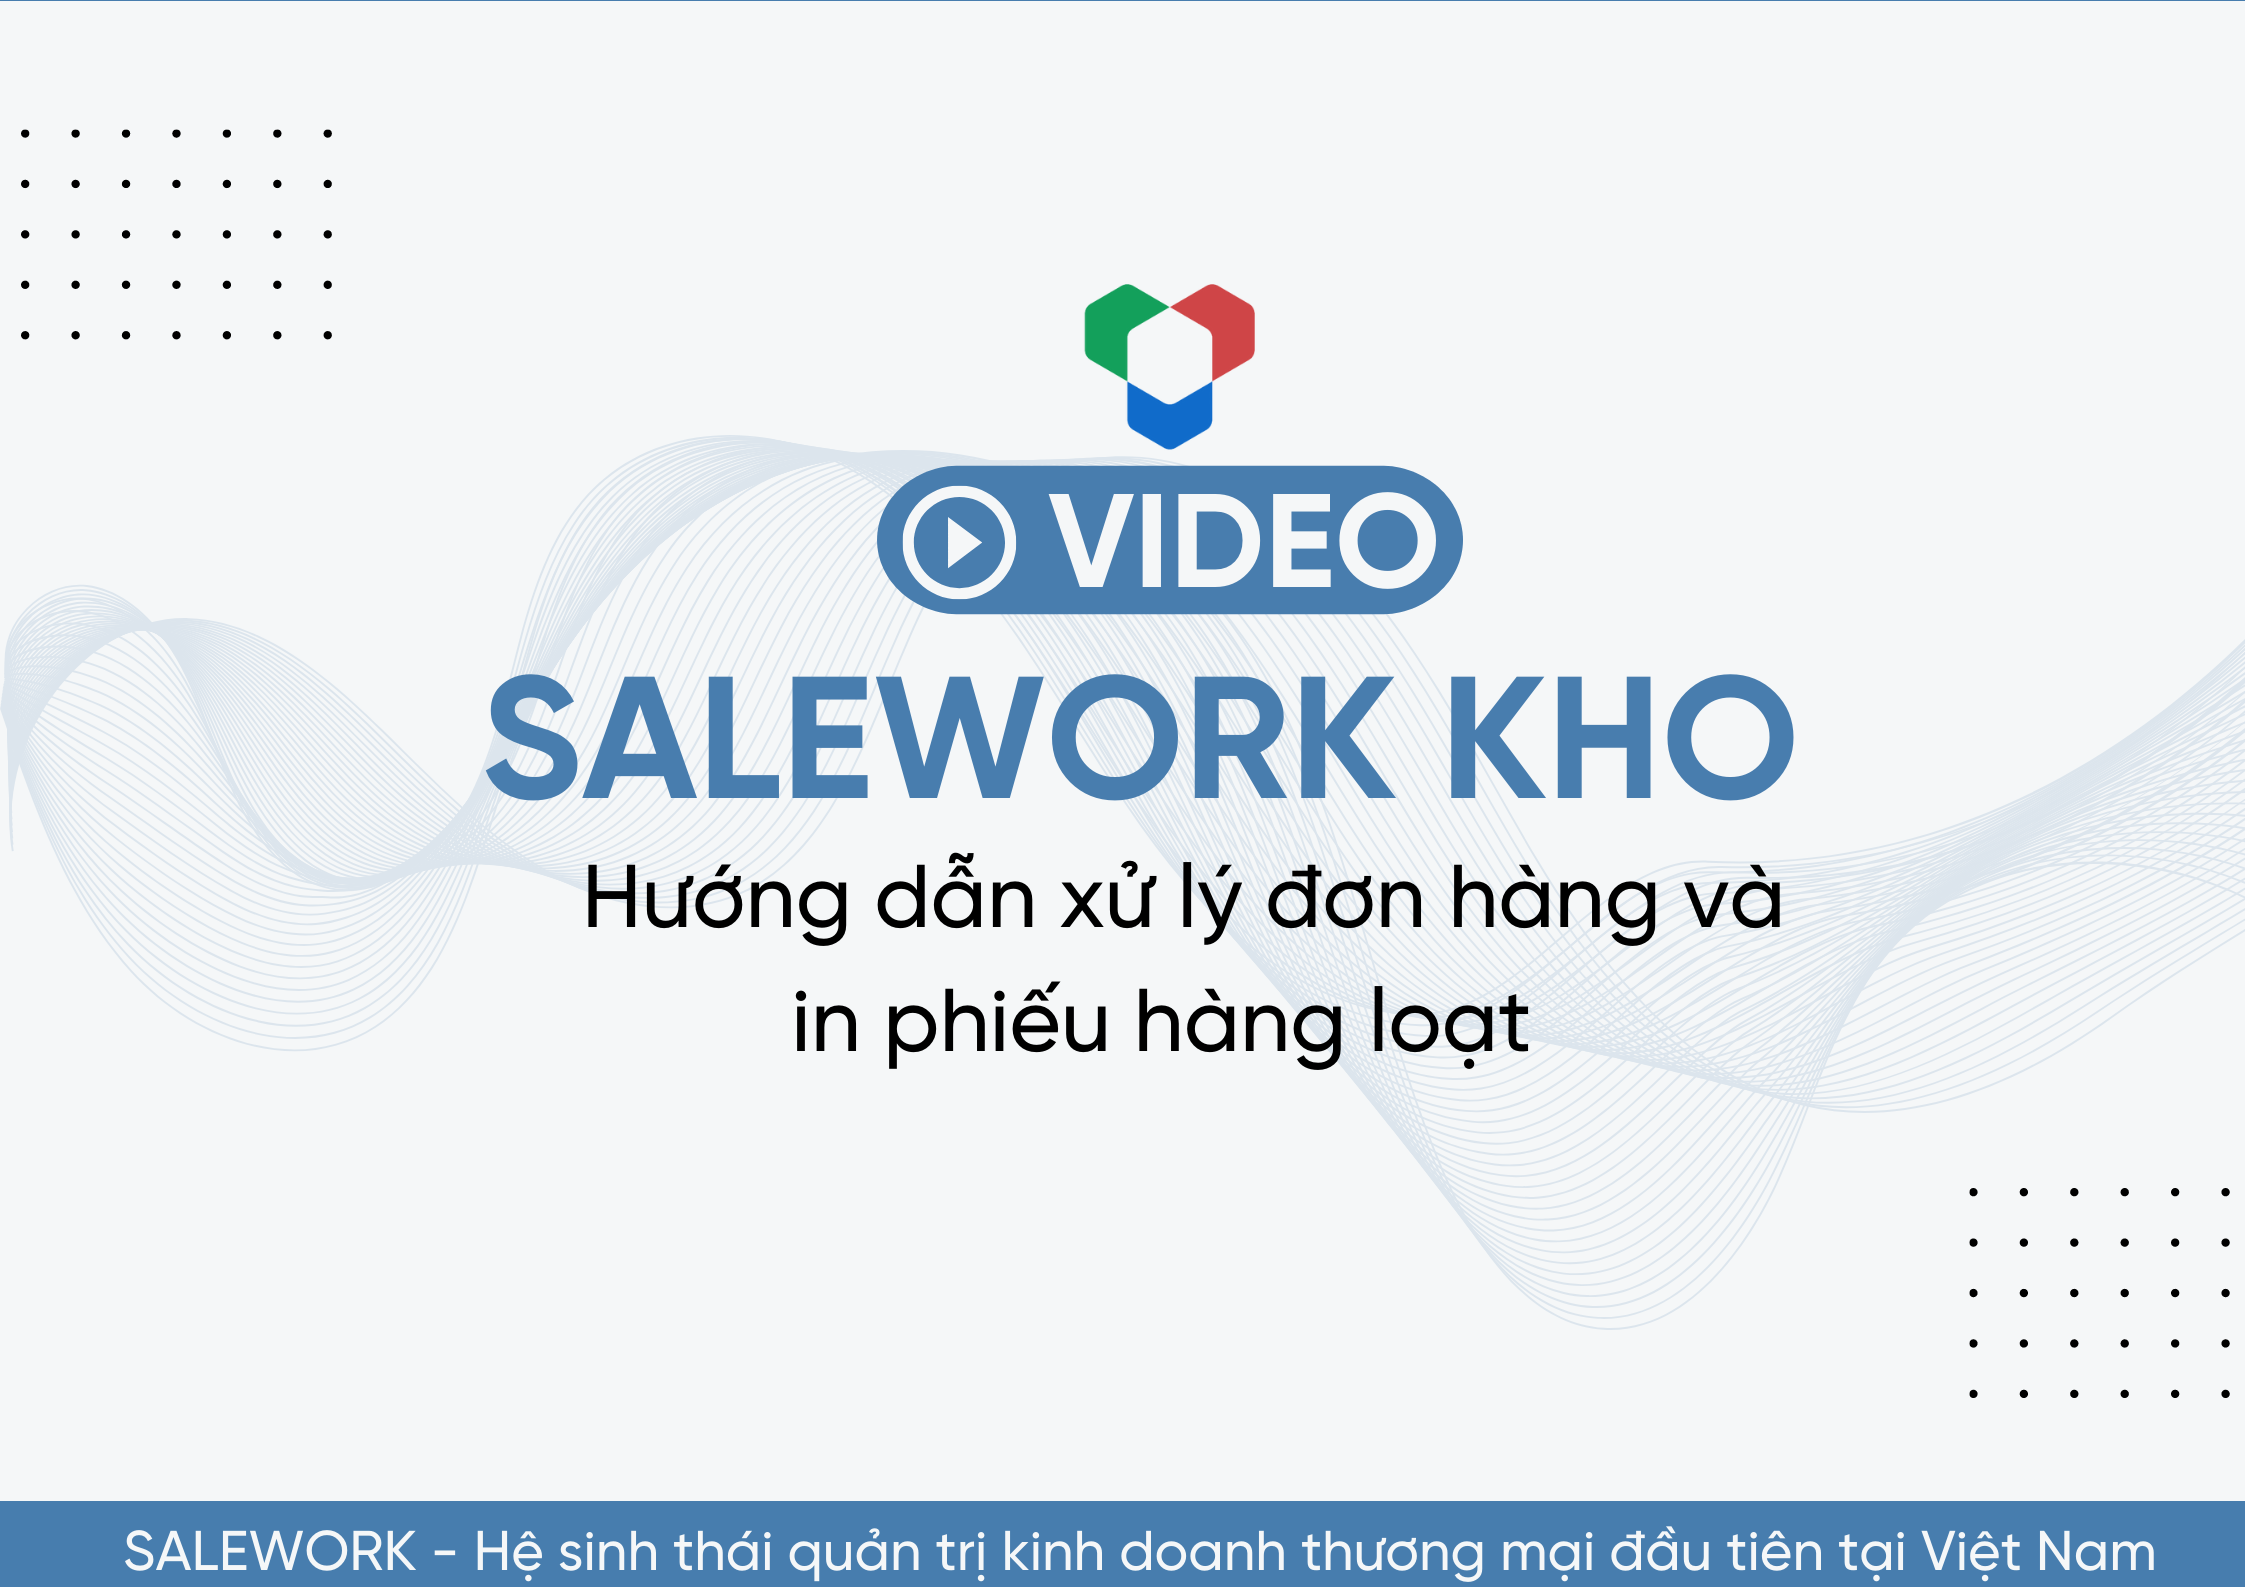 [VIDEO] Hướng dẫn xử lý đơn hàng và in phiếu hàng loạt tại Salework Kho - 11